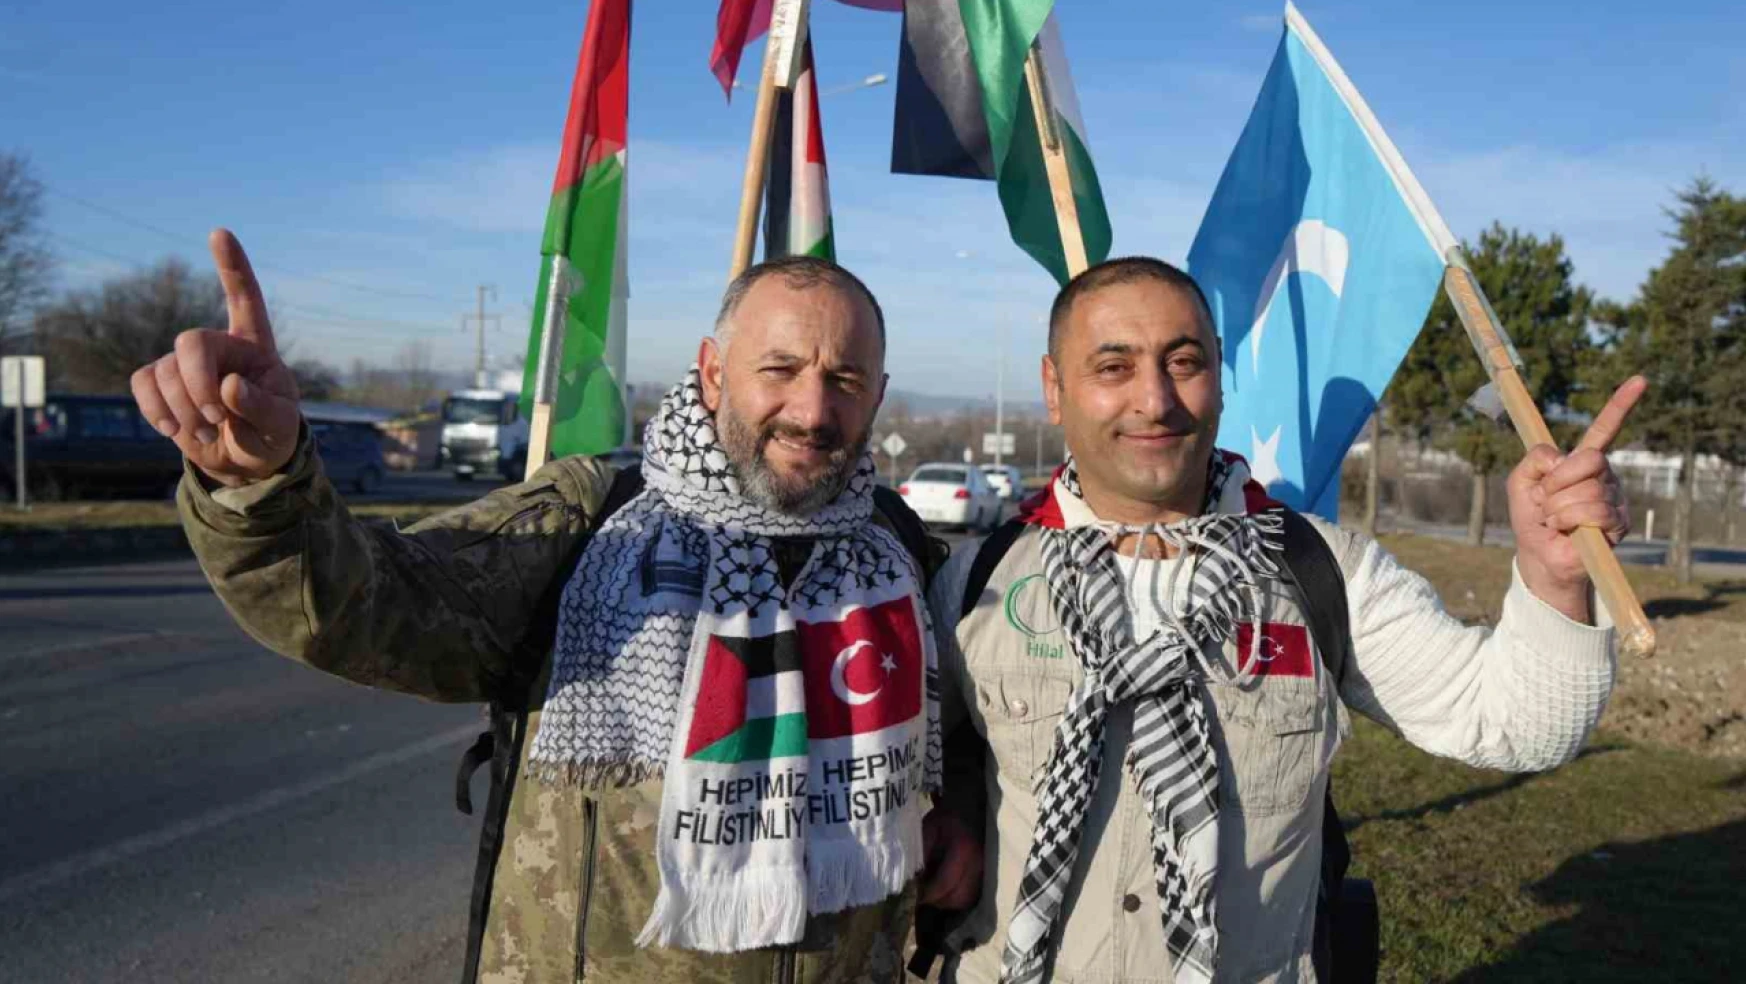 İstanbul'dan Ankara'ya Filistin'e özgürlük için yürüyorlar: 270 kilometre geride kaldı